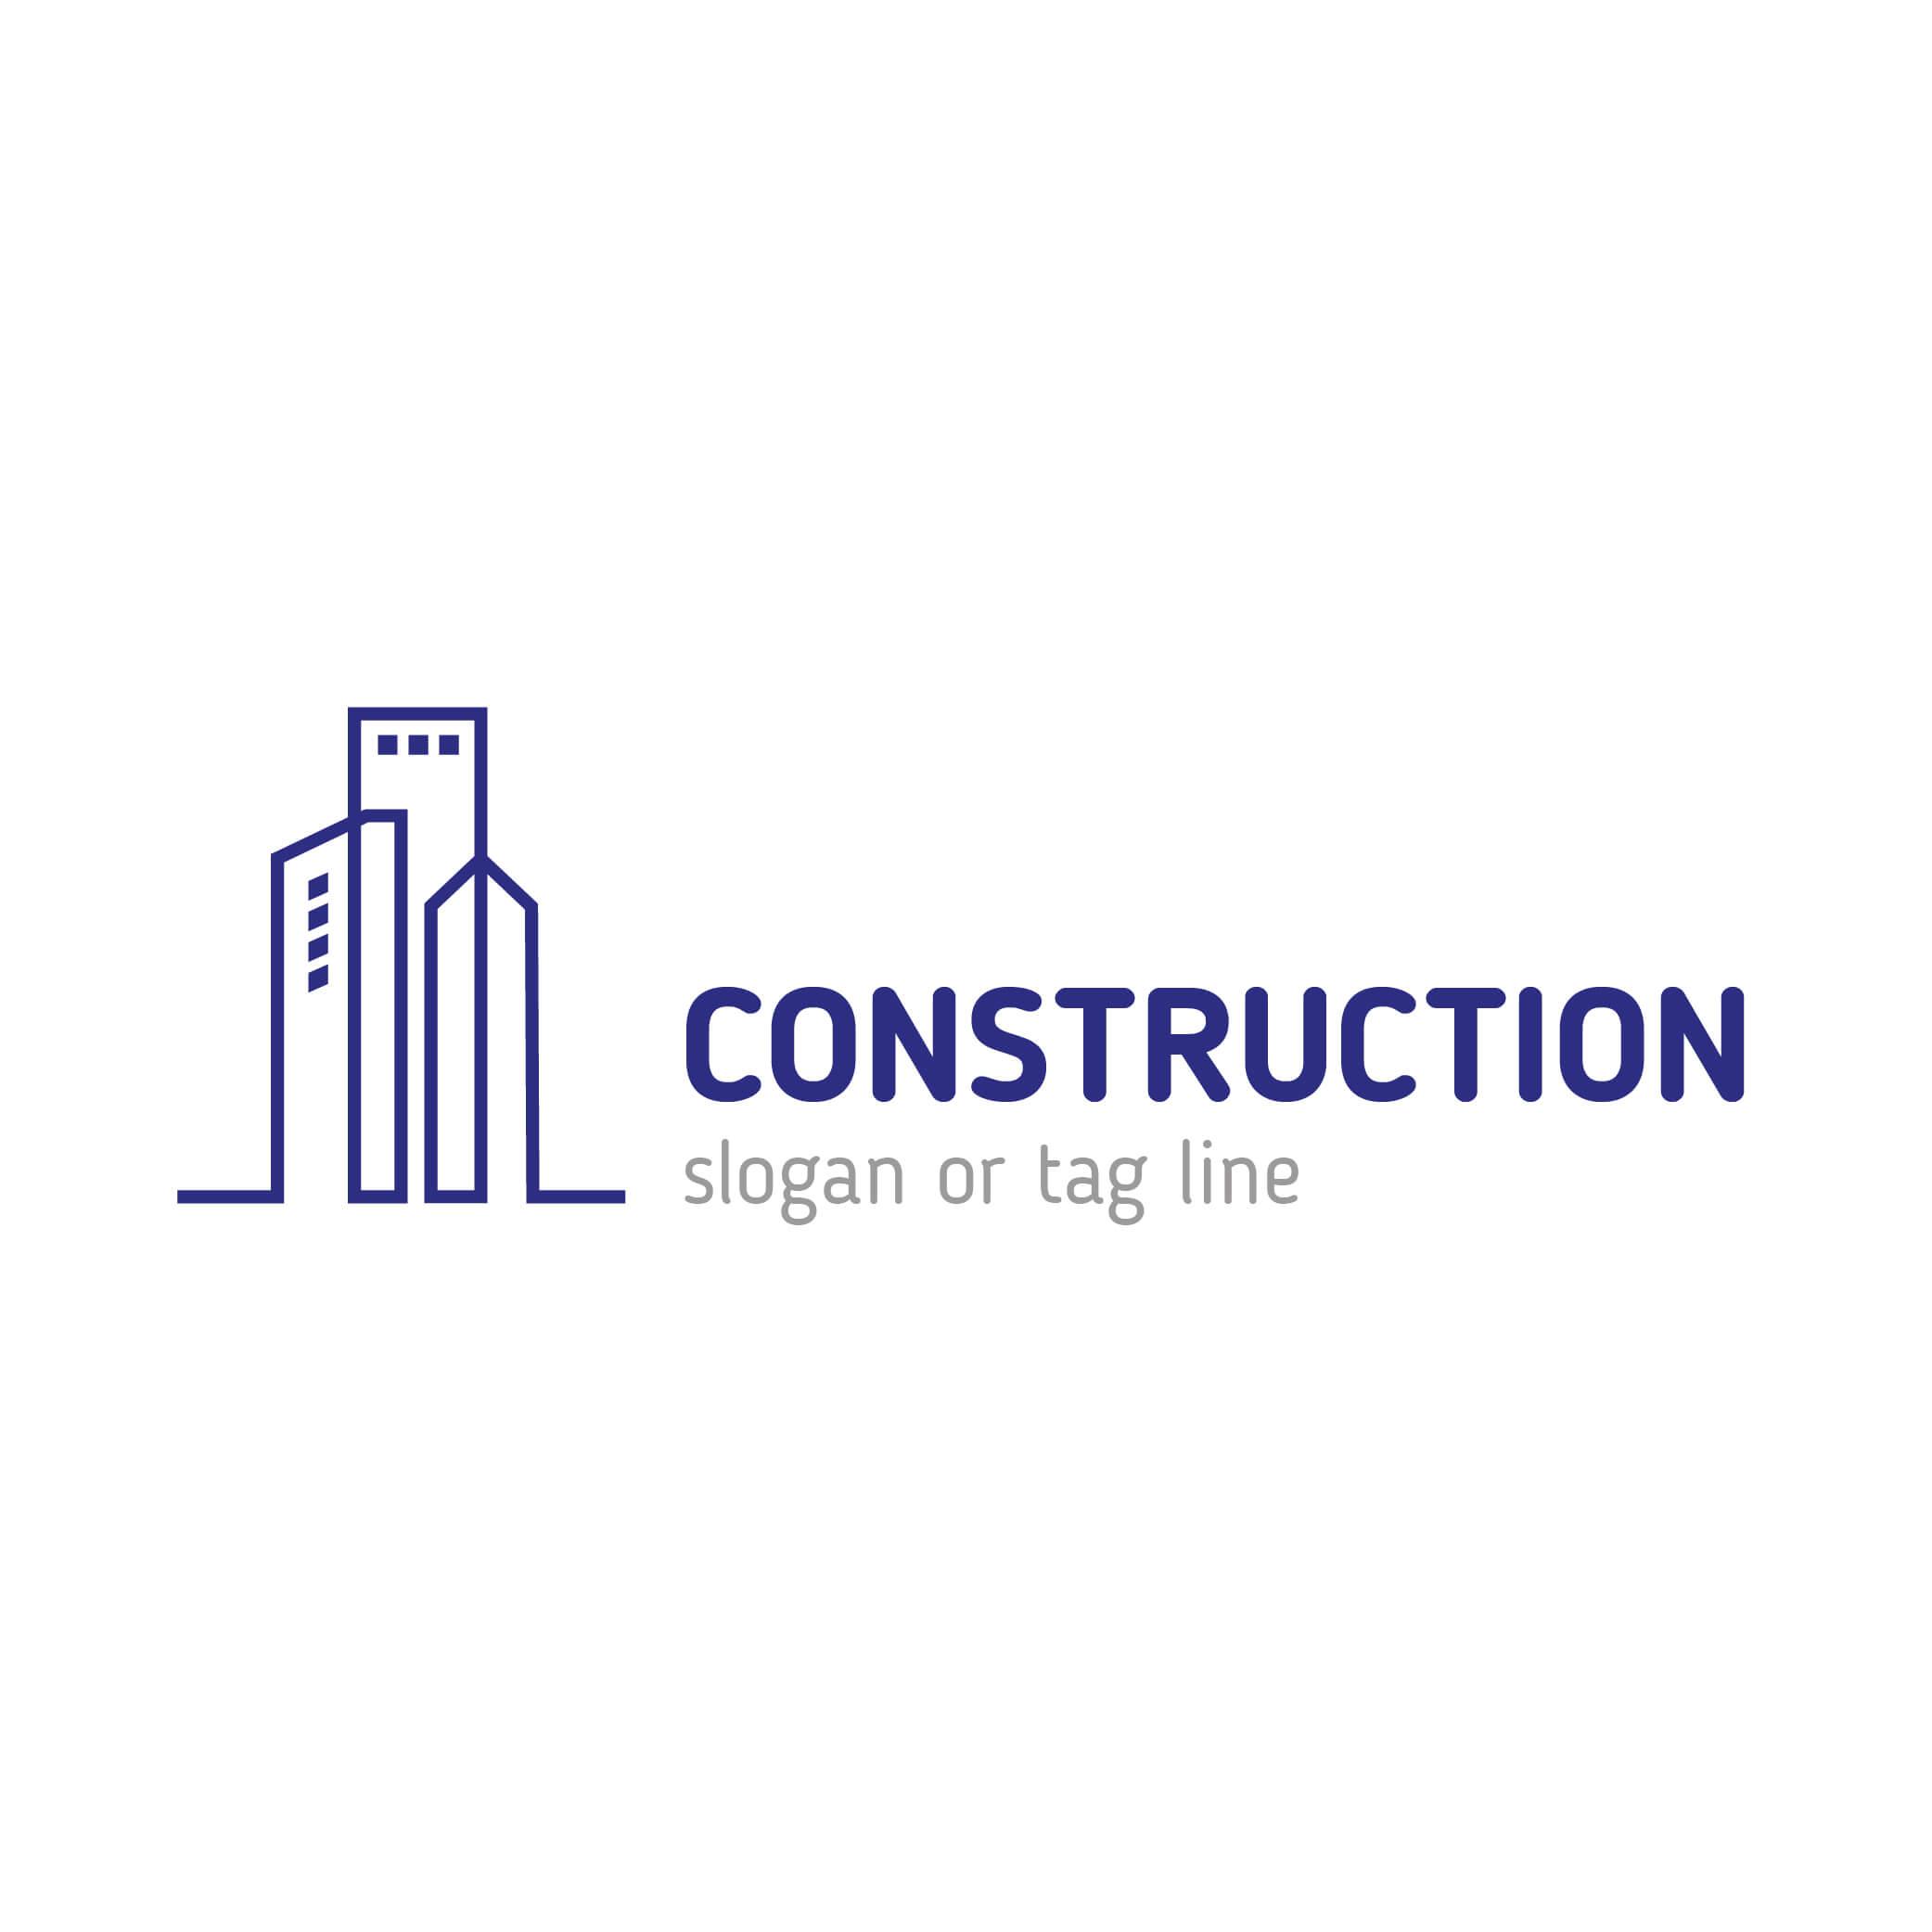 Google Construction Logo - Construction Real Estate company logo templates Vector